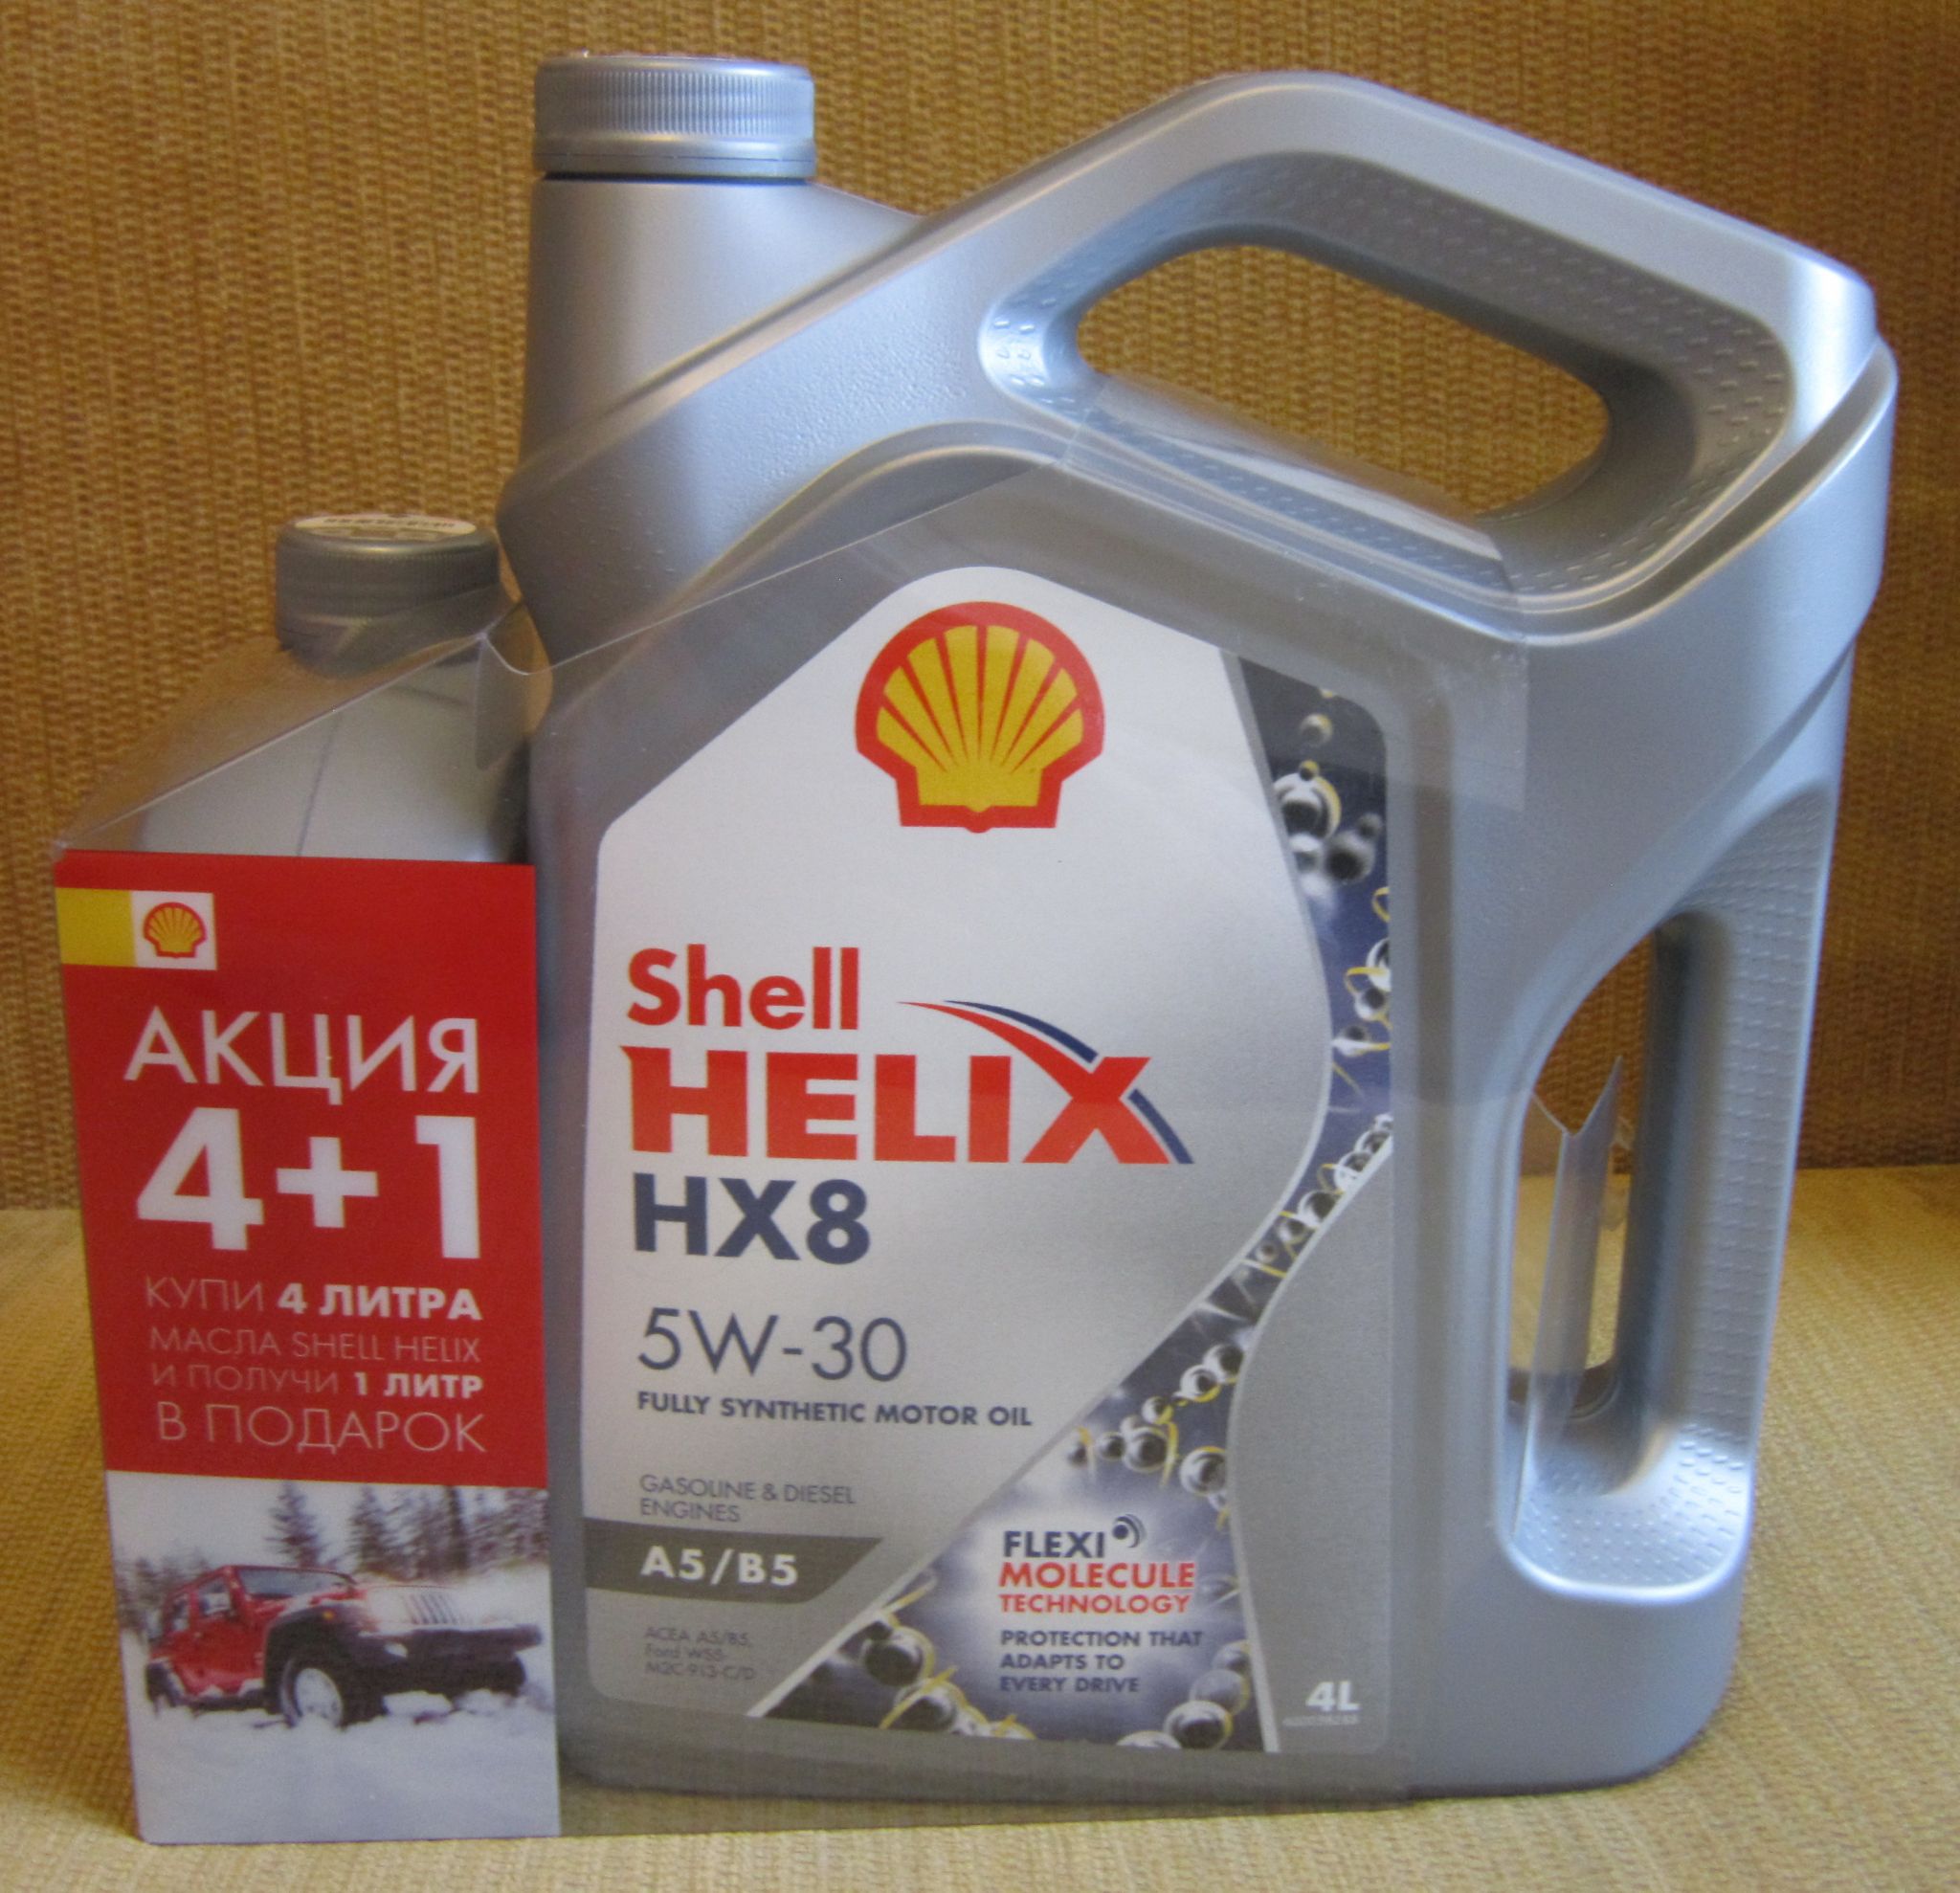 Масло а5 5w40. Shell hx8 5w30. Shell hx8 5w30 a5/b5. Моторное масло синтетическое Shell Helix hx8 a5/b5 5w-30. Моторное масло Shell Helix hx8 a5/b5 5w-30 синтетическое 4 л.